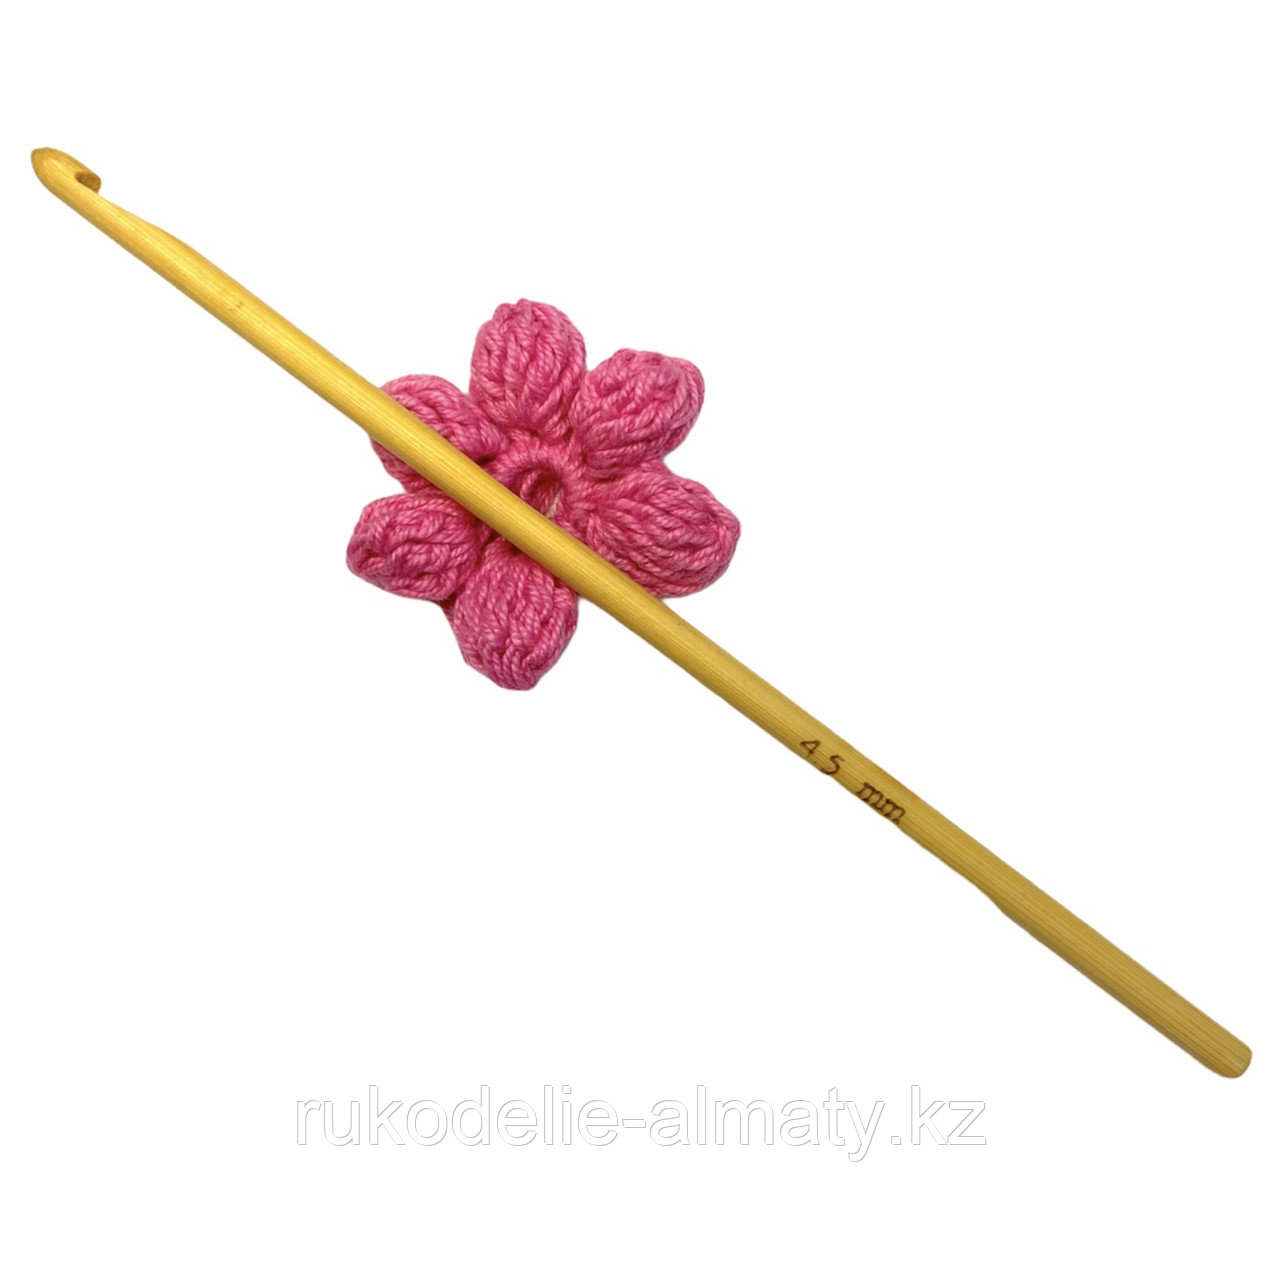 Крючок для вязания бамбуковый 4.5